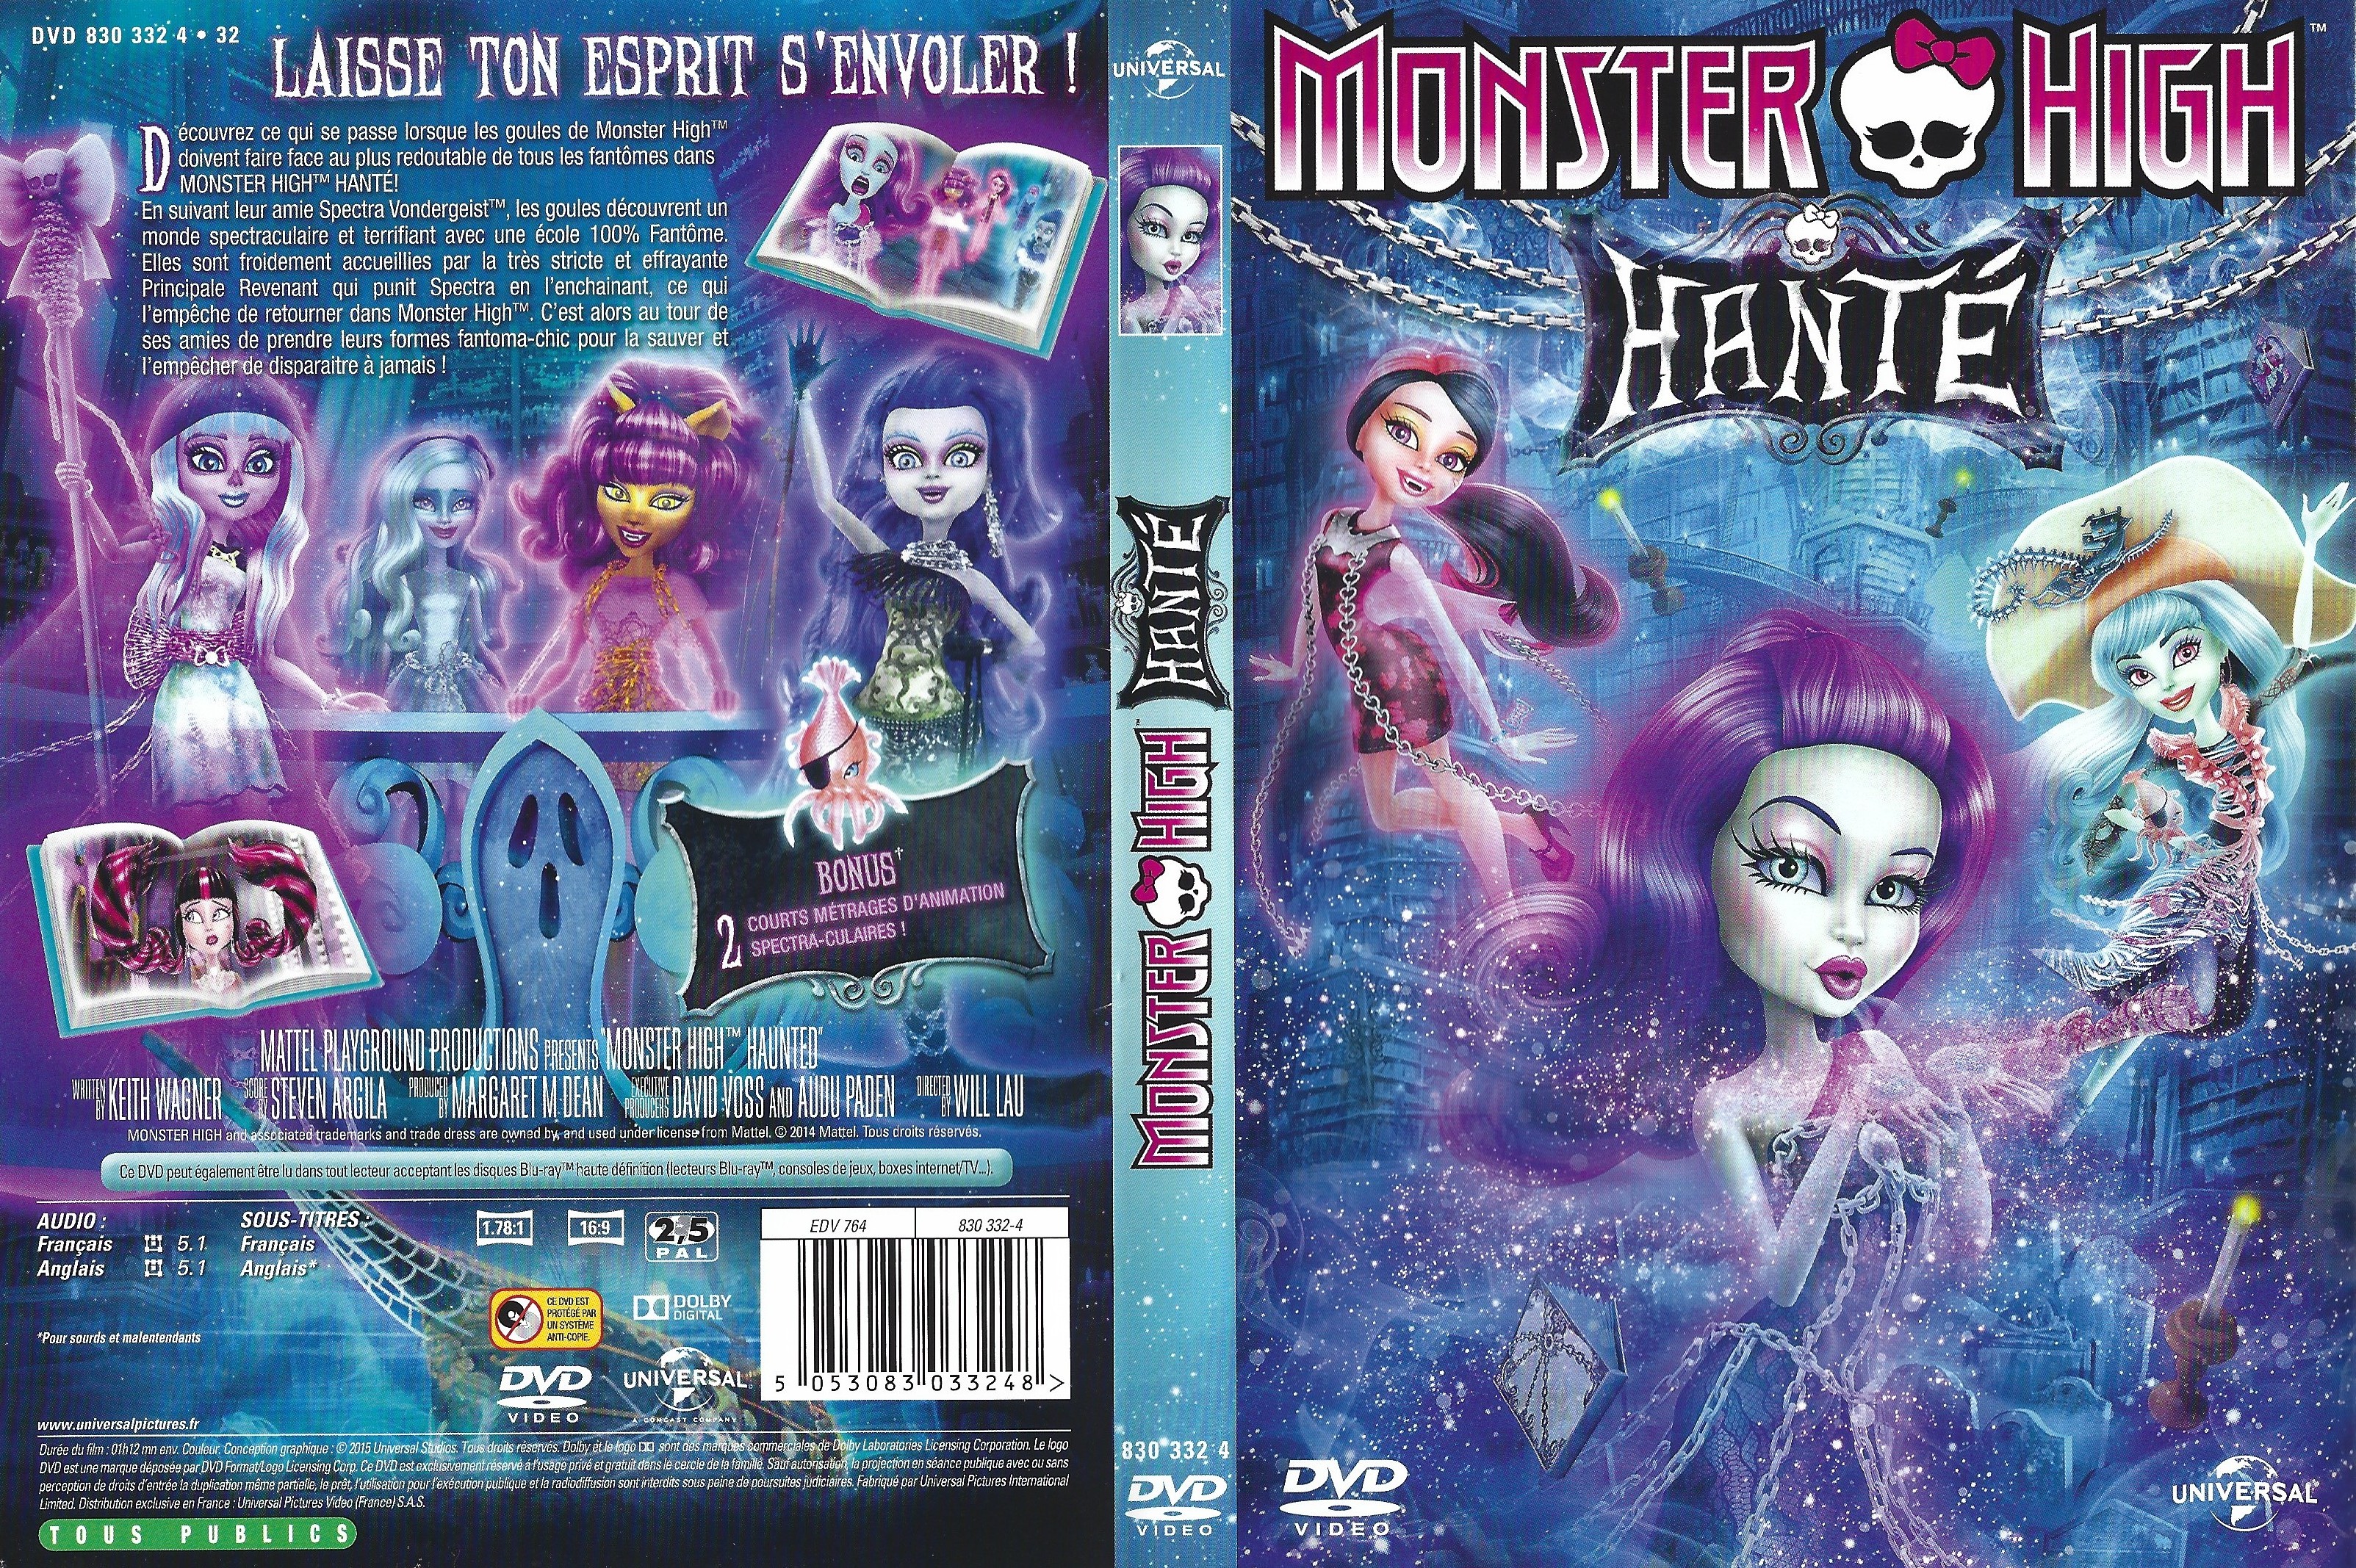 Jaquette DVD Monster High Hant